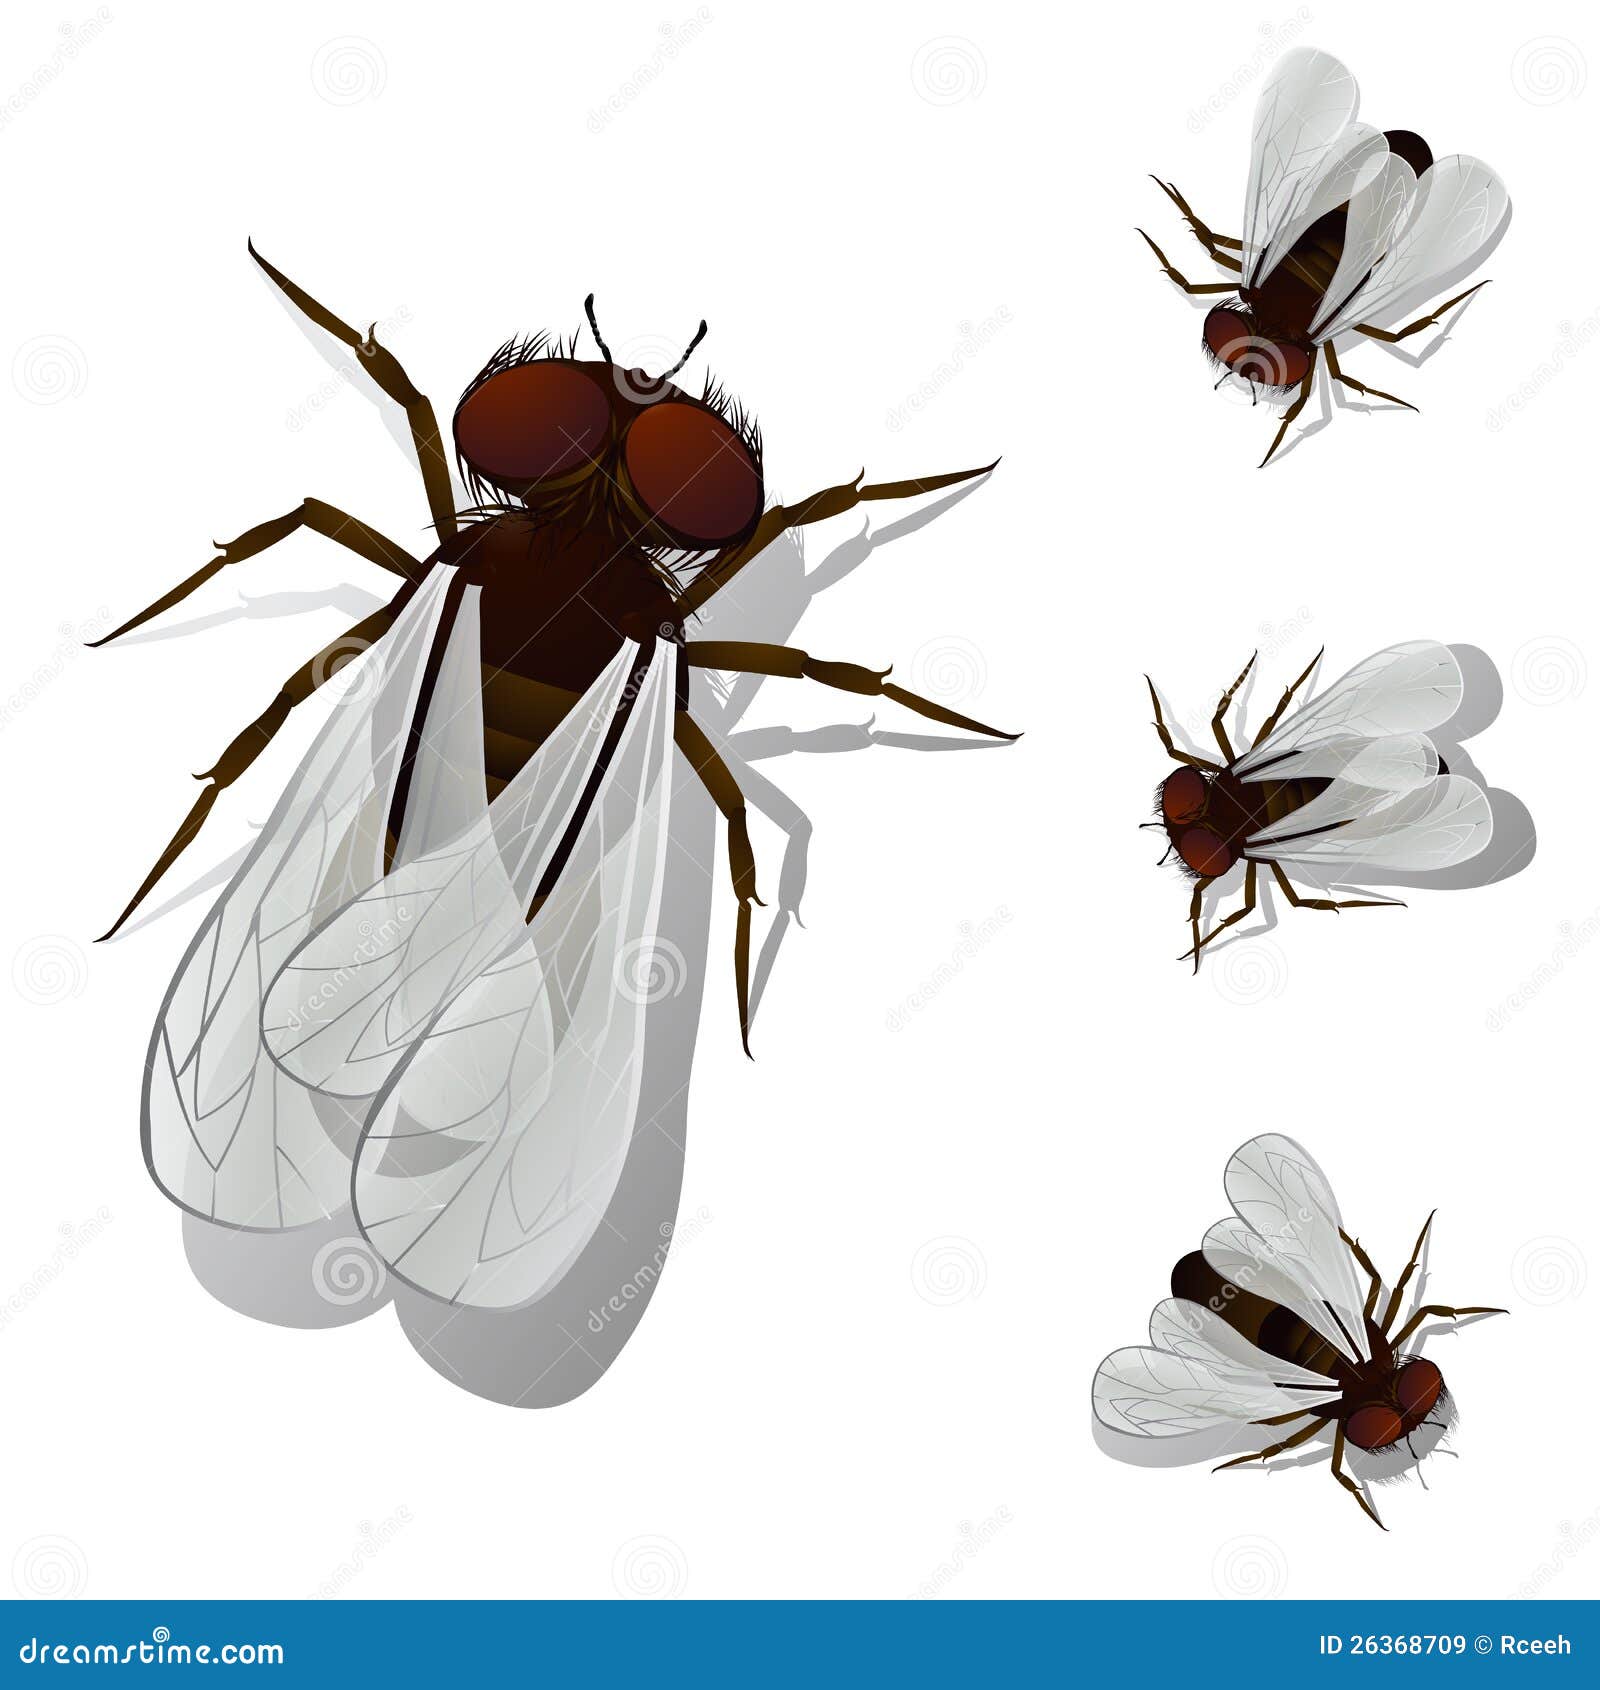 Mosca della Camera. Alloggi gli oggetti isolata e raggruppato dell'accumulazione della mosca, sopra bianco. Effetto dell'acetato usato.